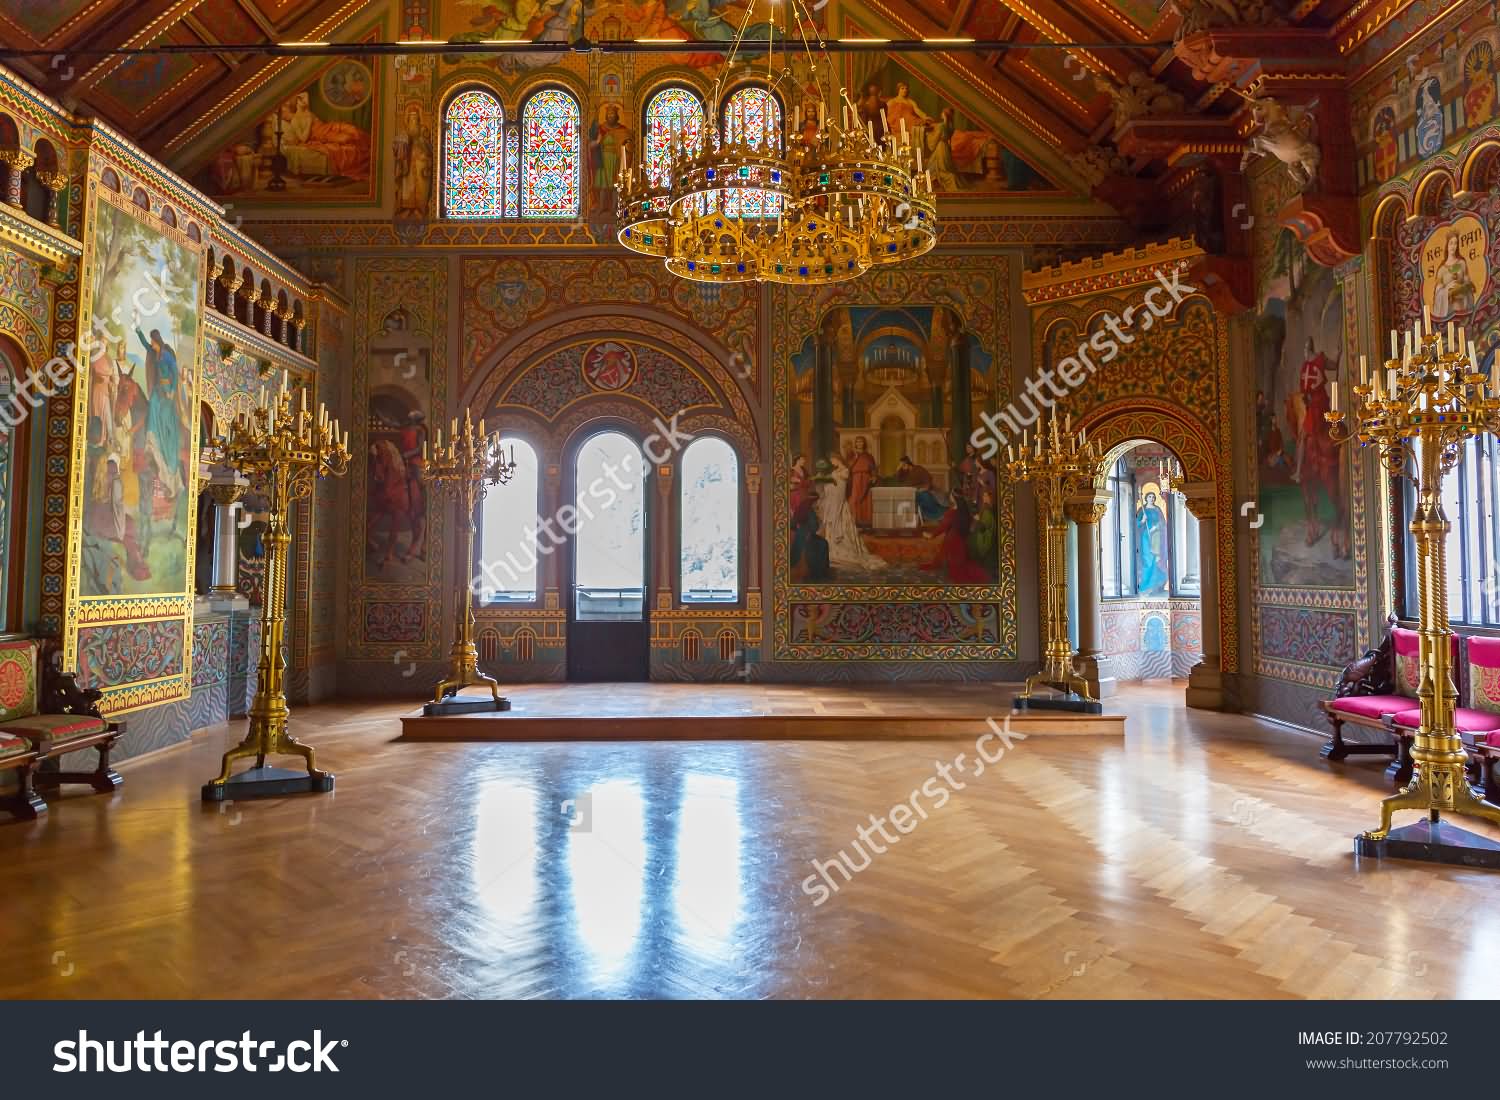 Interior Of The Neuschwanstein Castle In Germany